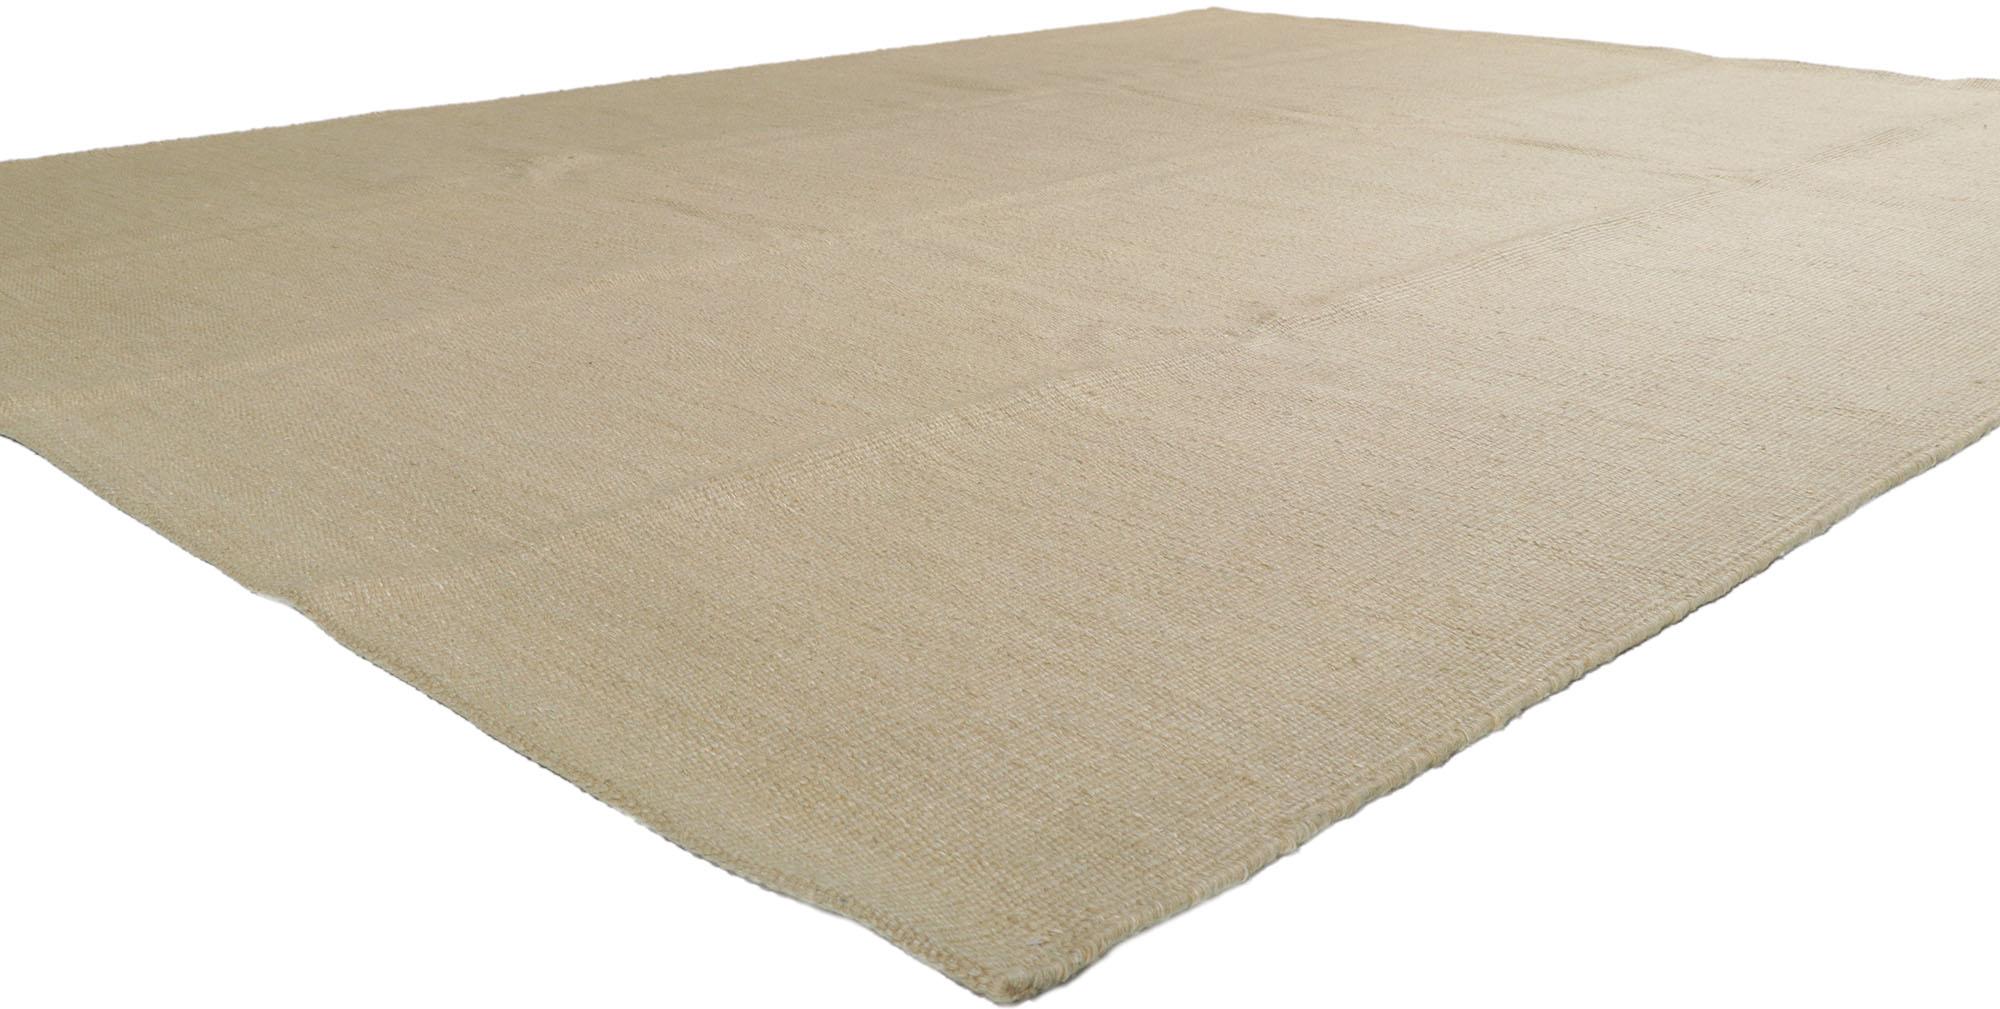 30685 Neuer schwedisch inspirierter Kilim-Teppich mit minimalistischem, skandinavisch modernem Stil 09'04 x 11'10. Mit seinem geometrischen Design und der minimalistischen Hygge-Atmosphäre verkörpert dieser handgewebte schwedische Kilim-Teppich aus